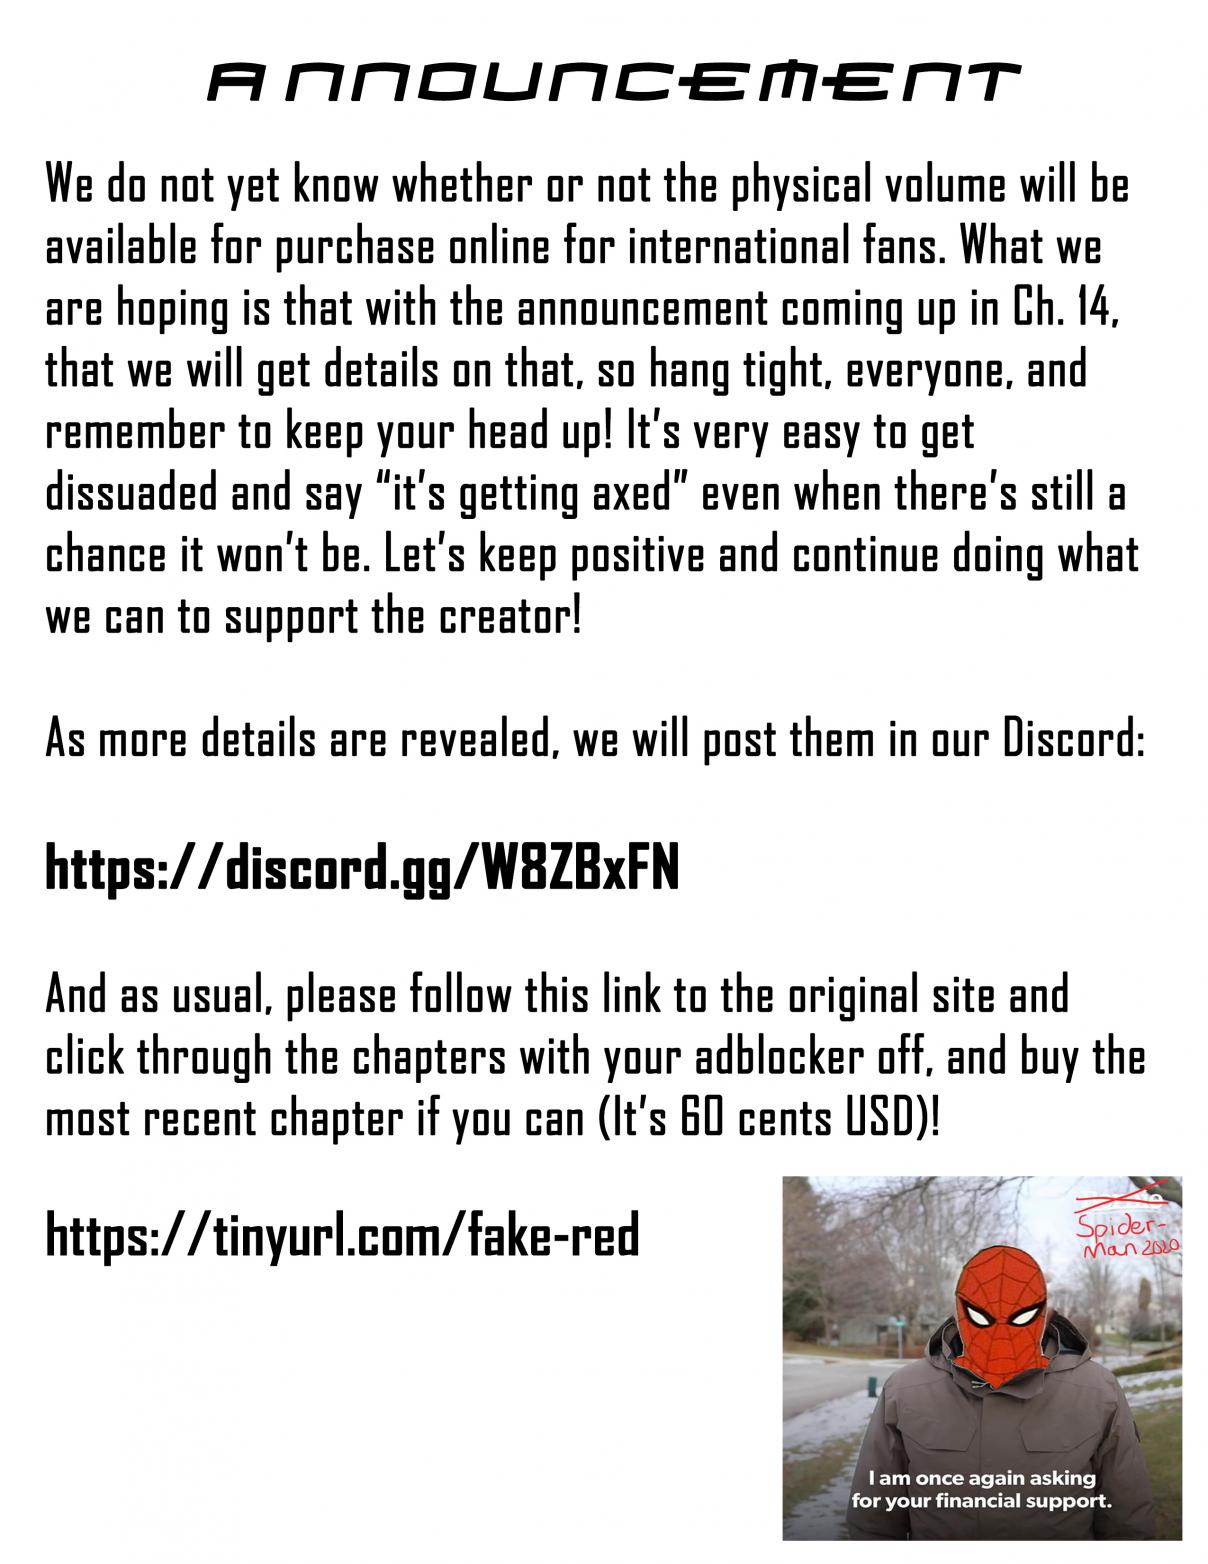 Spider Man: Fake Red Vol. 2 Ch. 13 Hometown